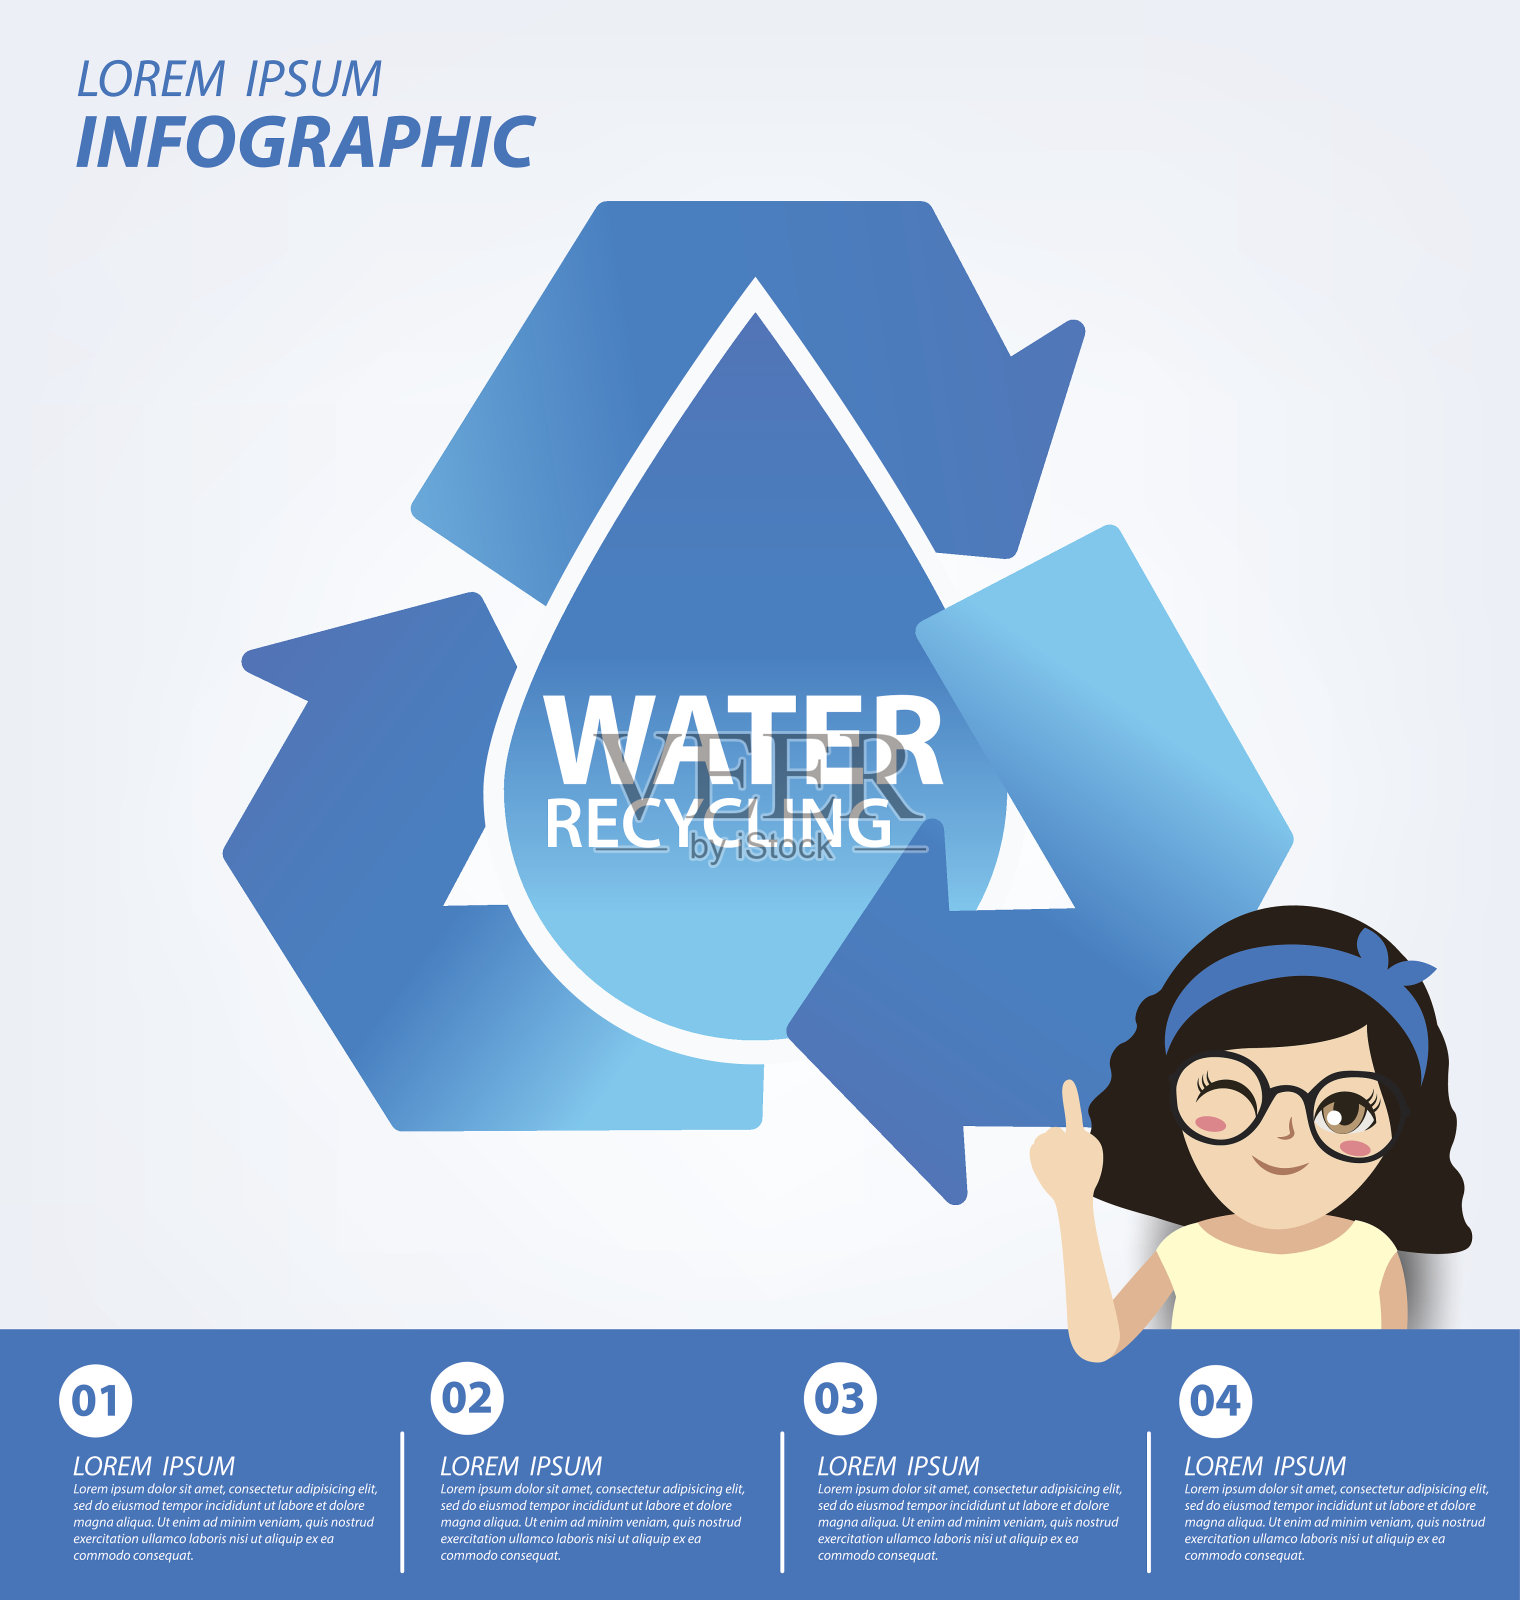 水回收。节约用水的概念。信息图表模板。矢量插图。插画图片素材